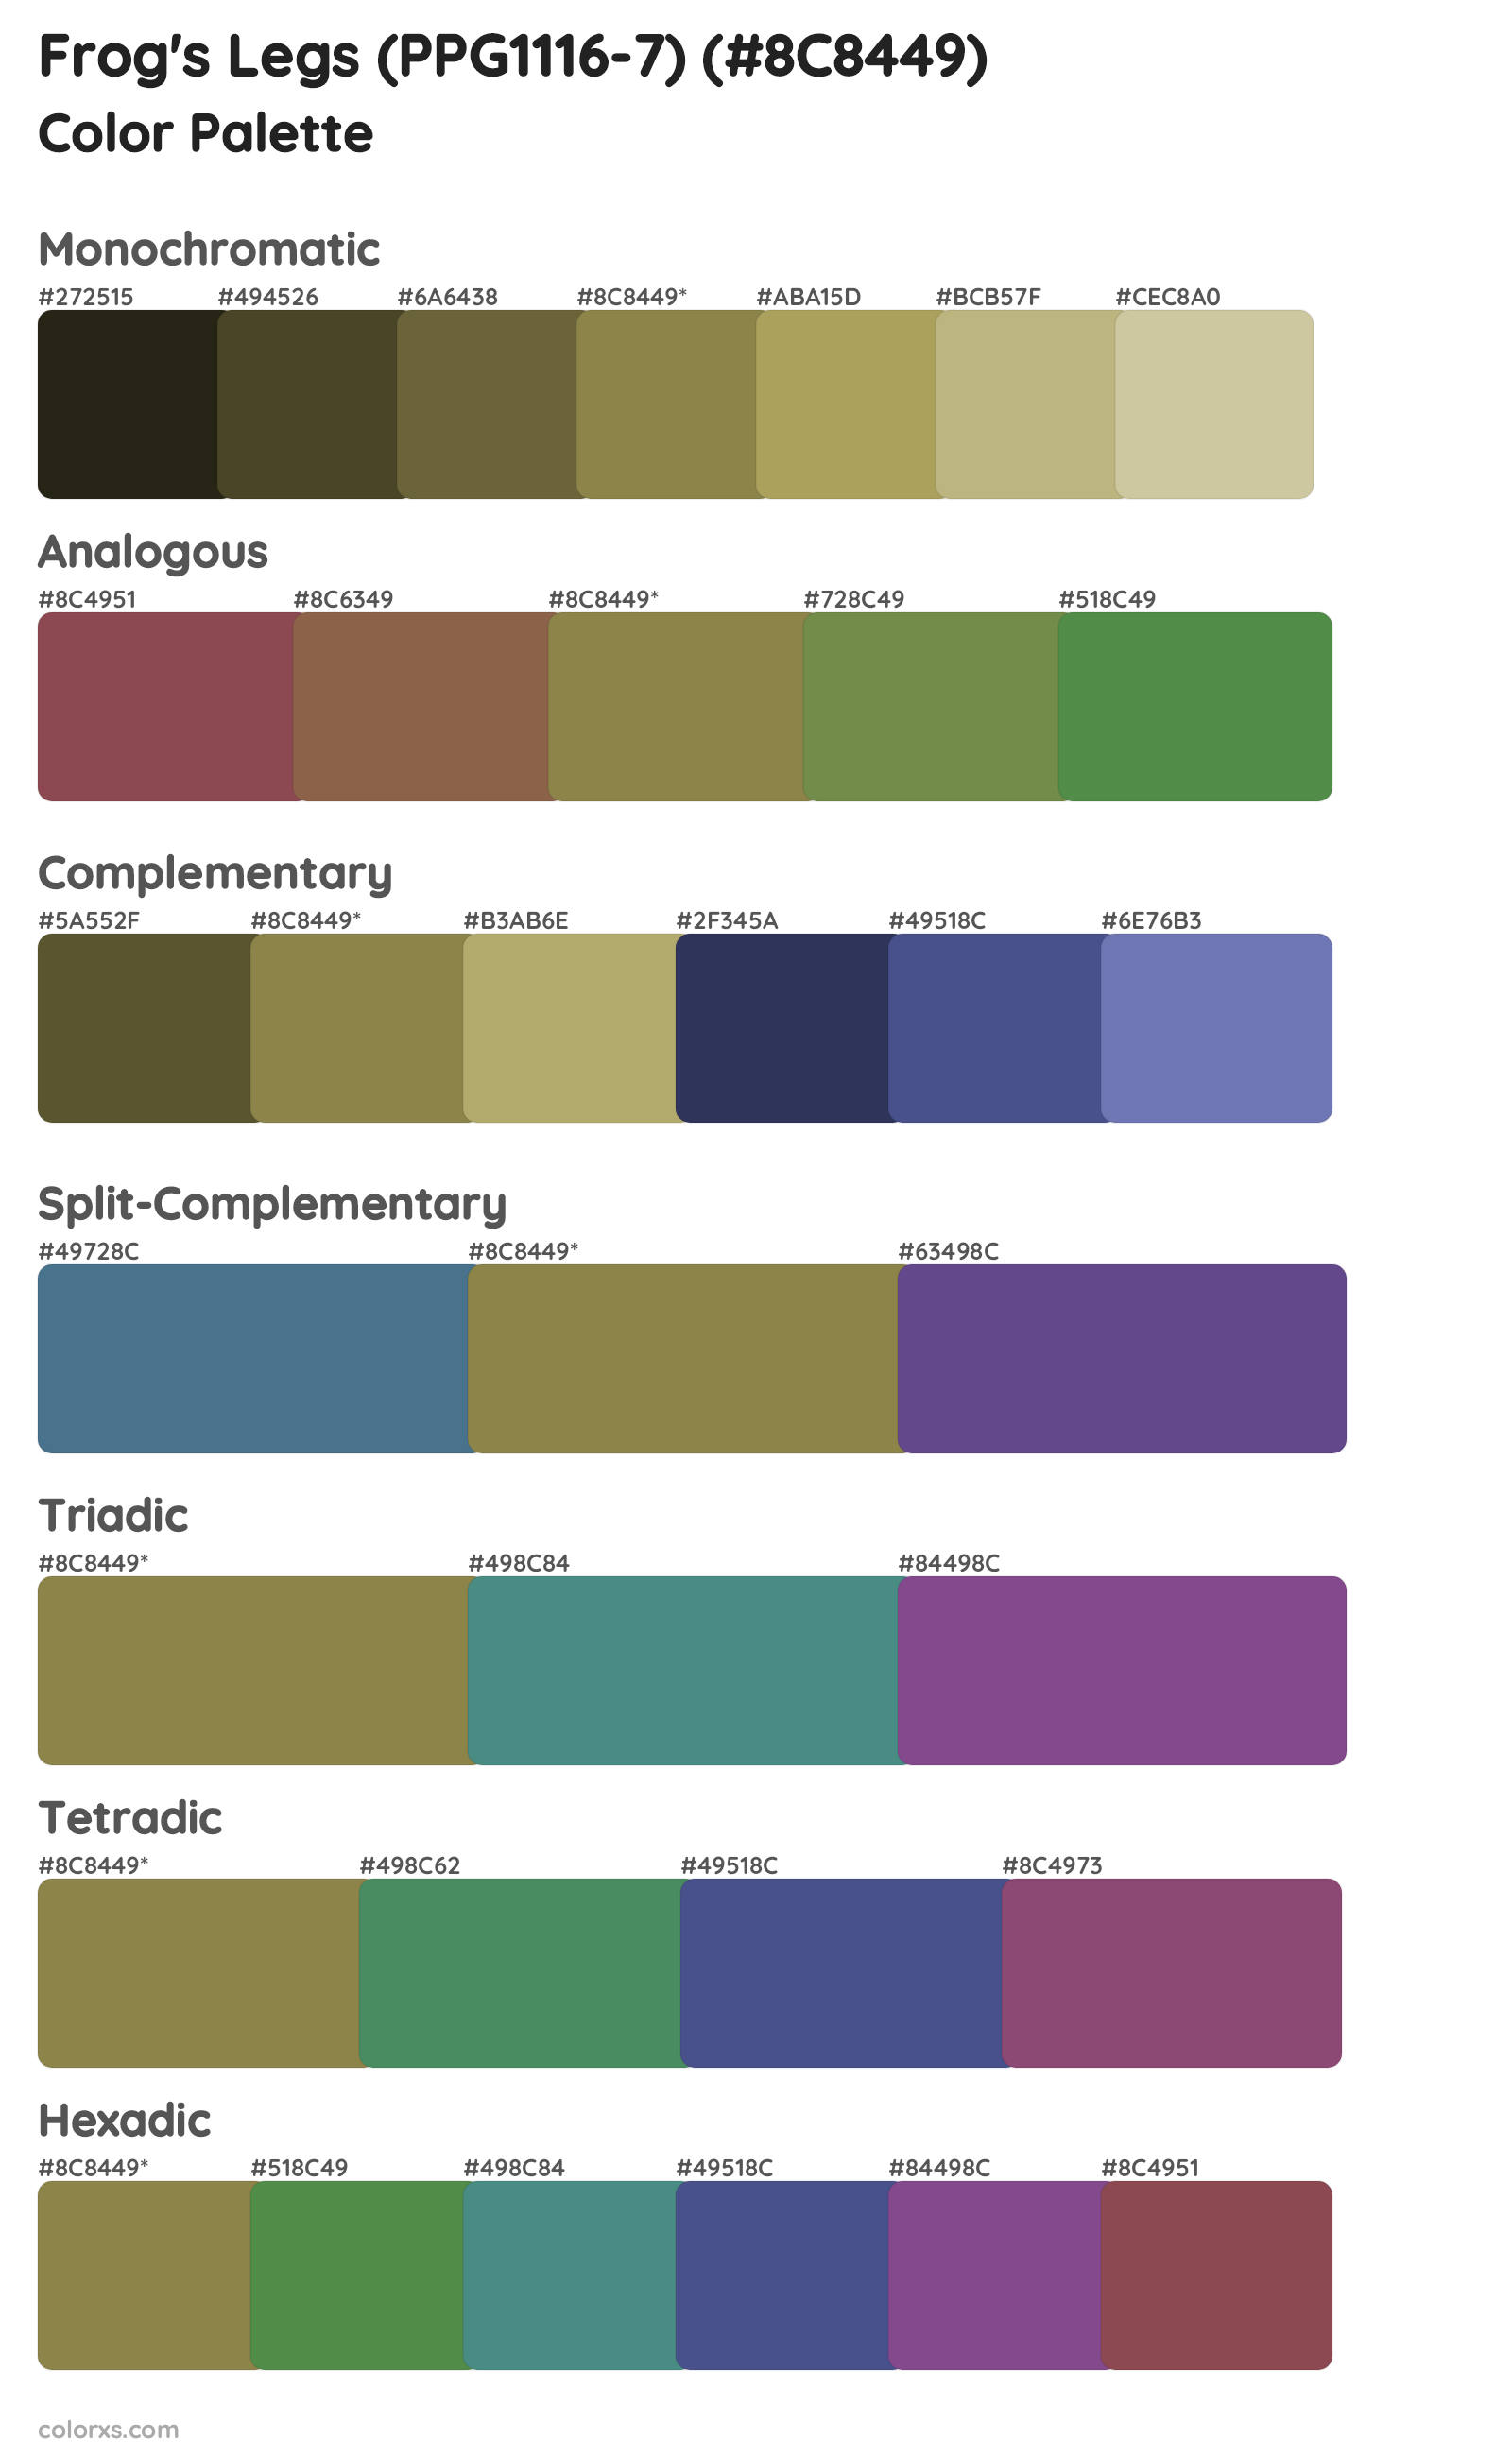 Frog's Legs (PPG1116-7) Color Scheme Palettes